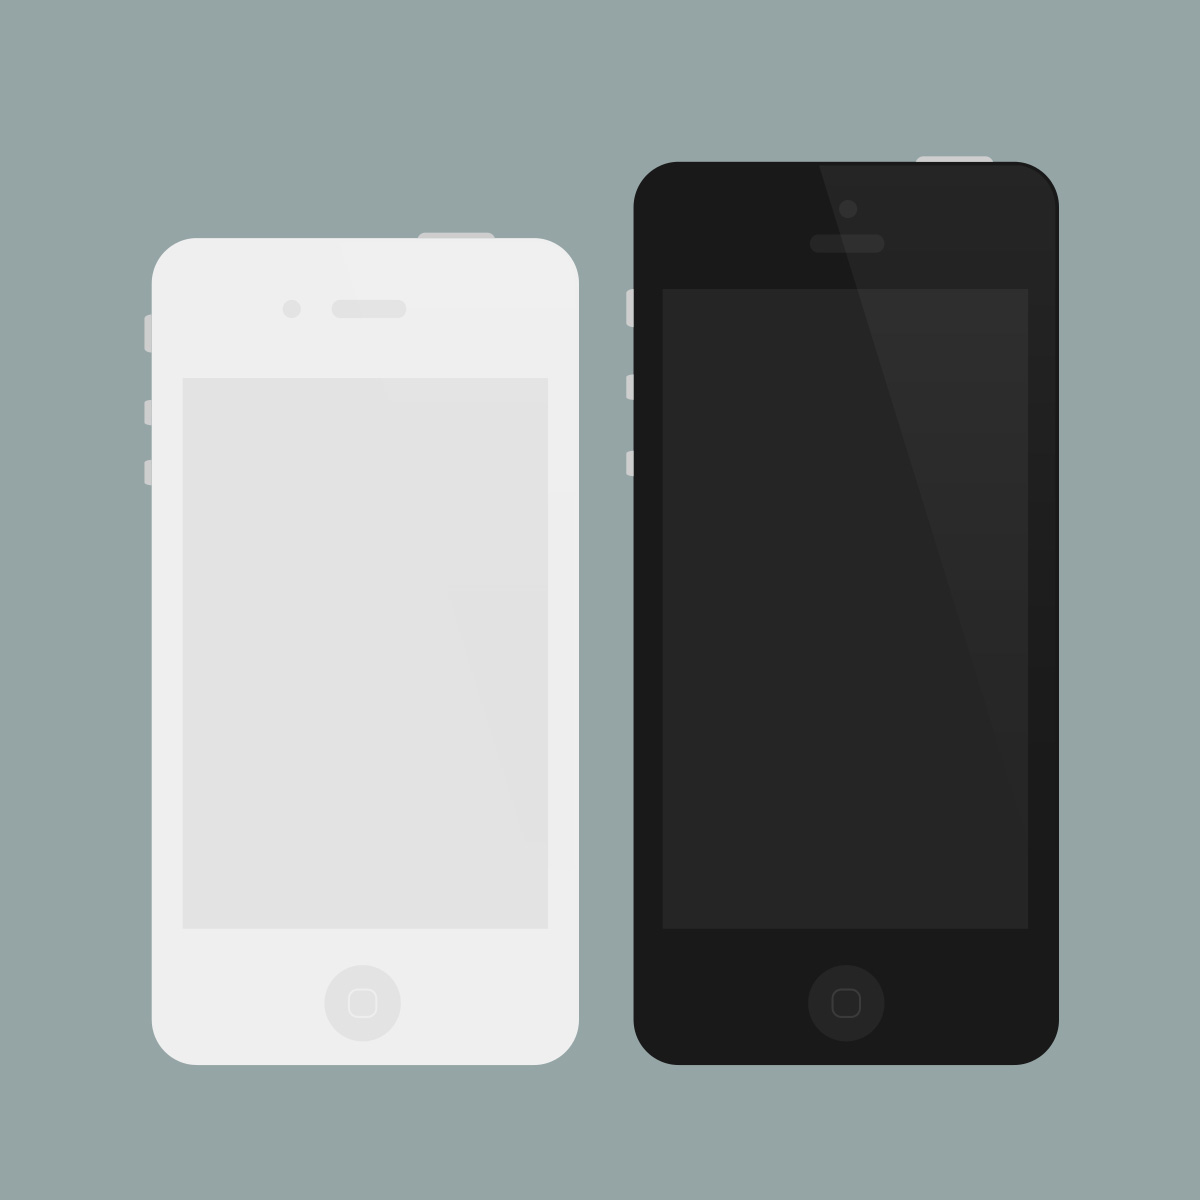 Flat iPhone 4/5 Mockups (PSD)